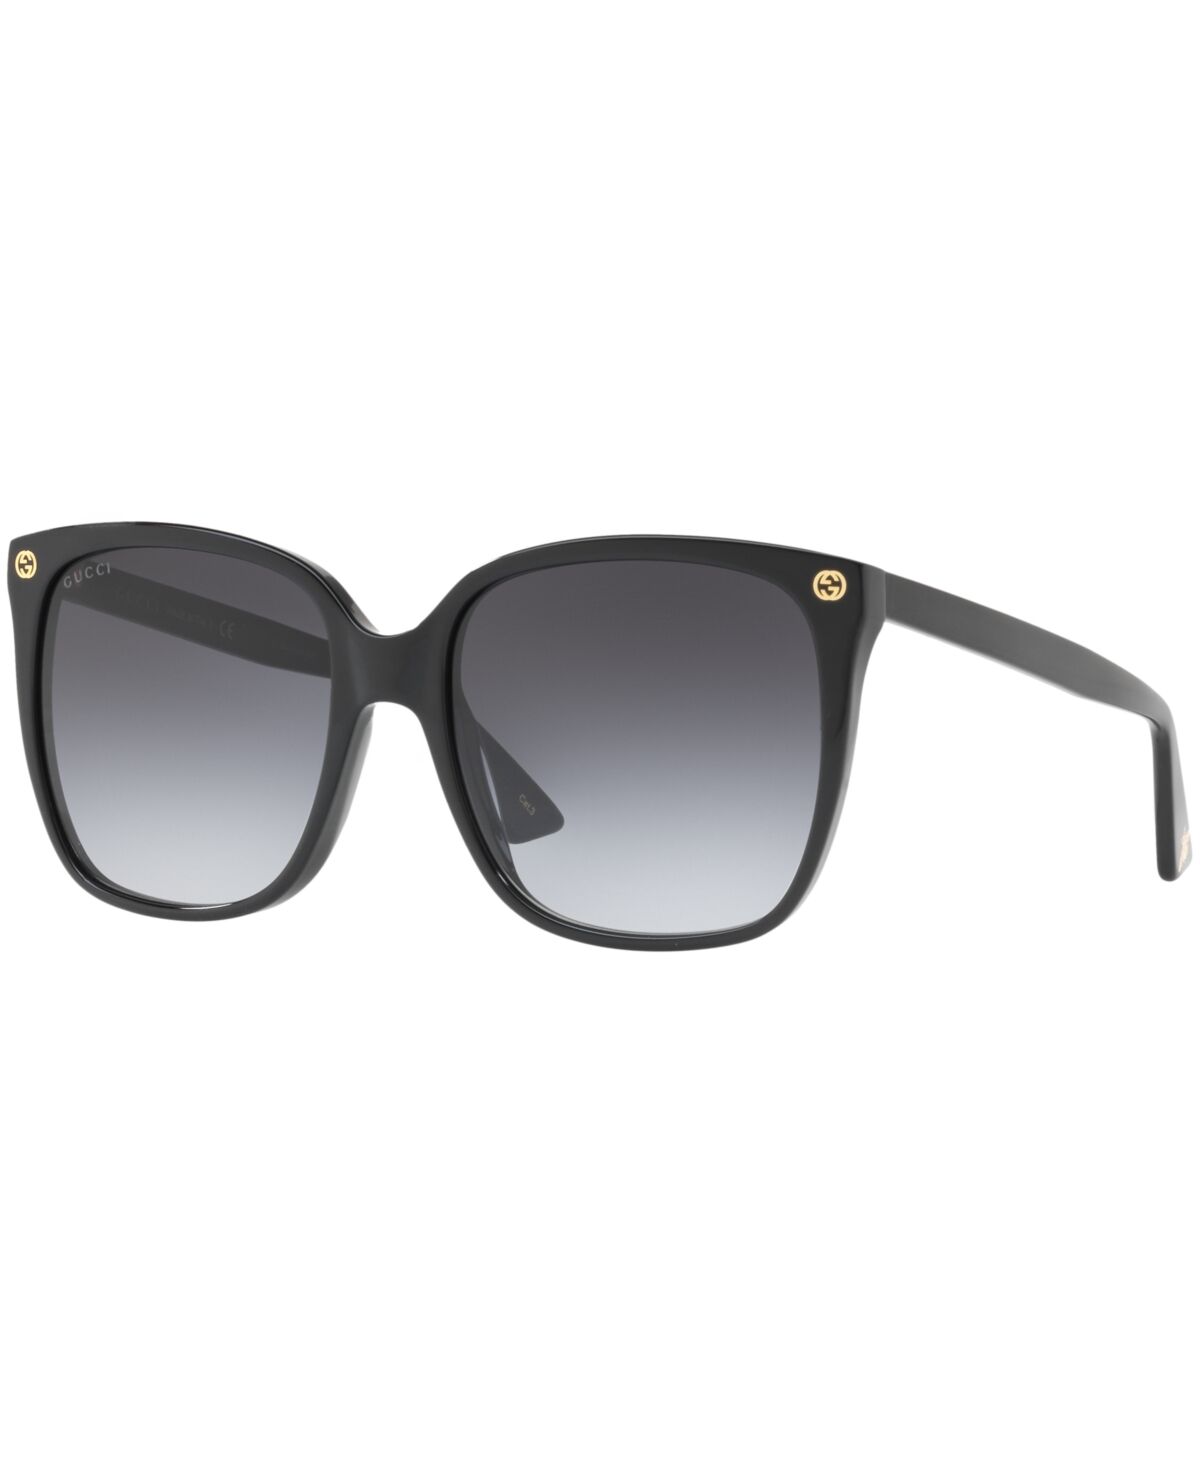 Gucci Sunglasses, GG0022S - BLACK/GREY GRADIENT